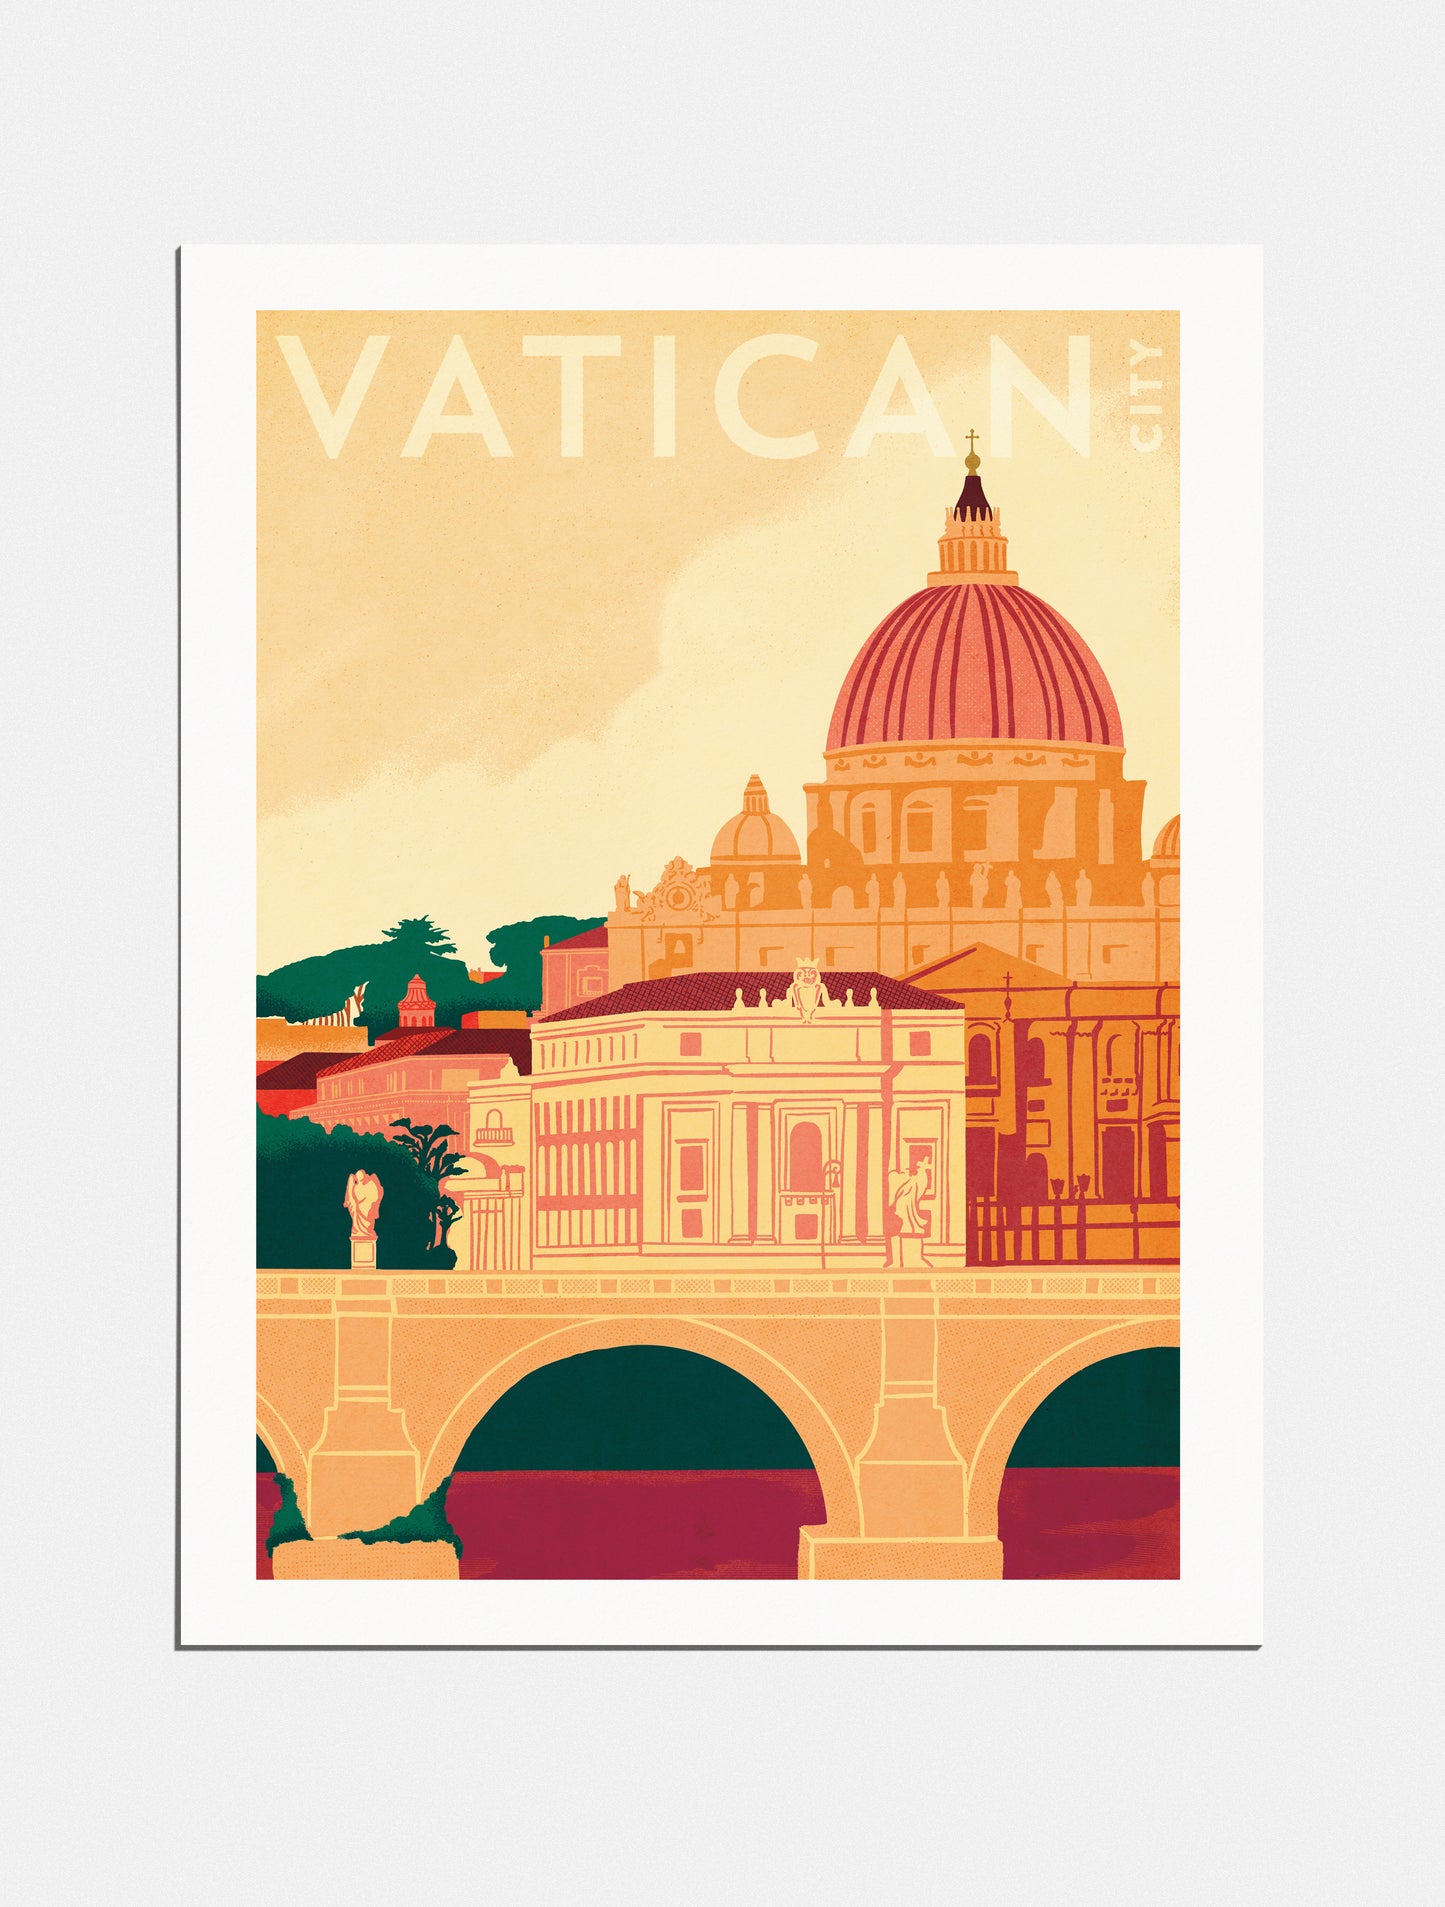 Print: Pilgrimage to Vatican City